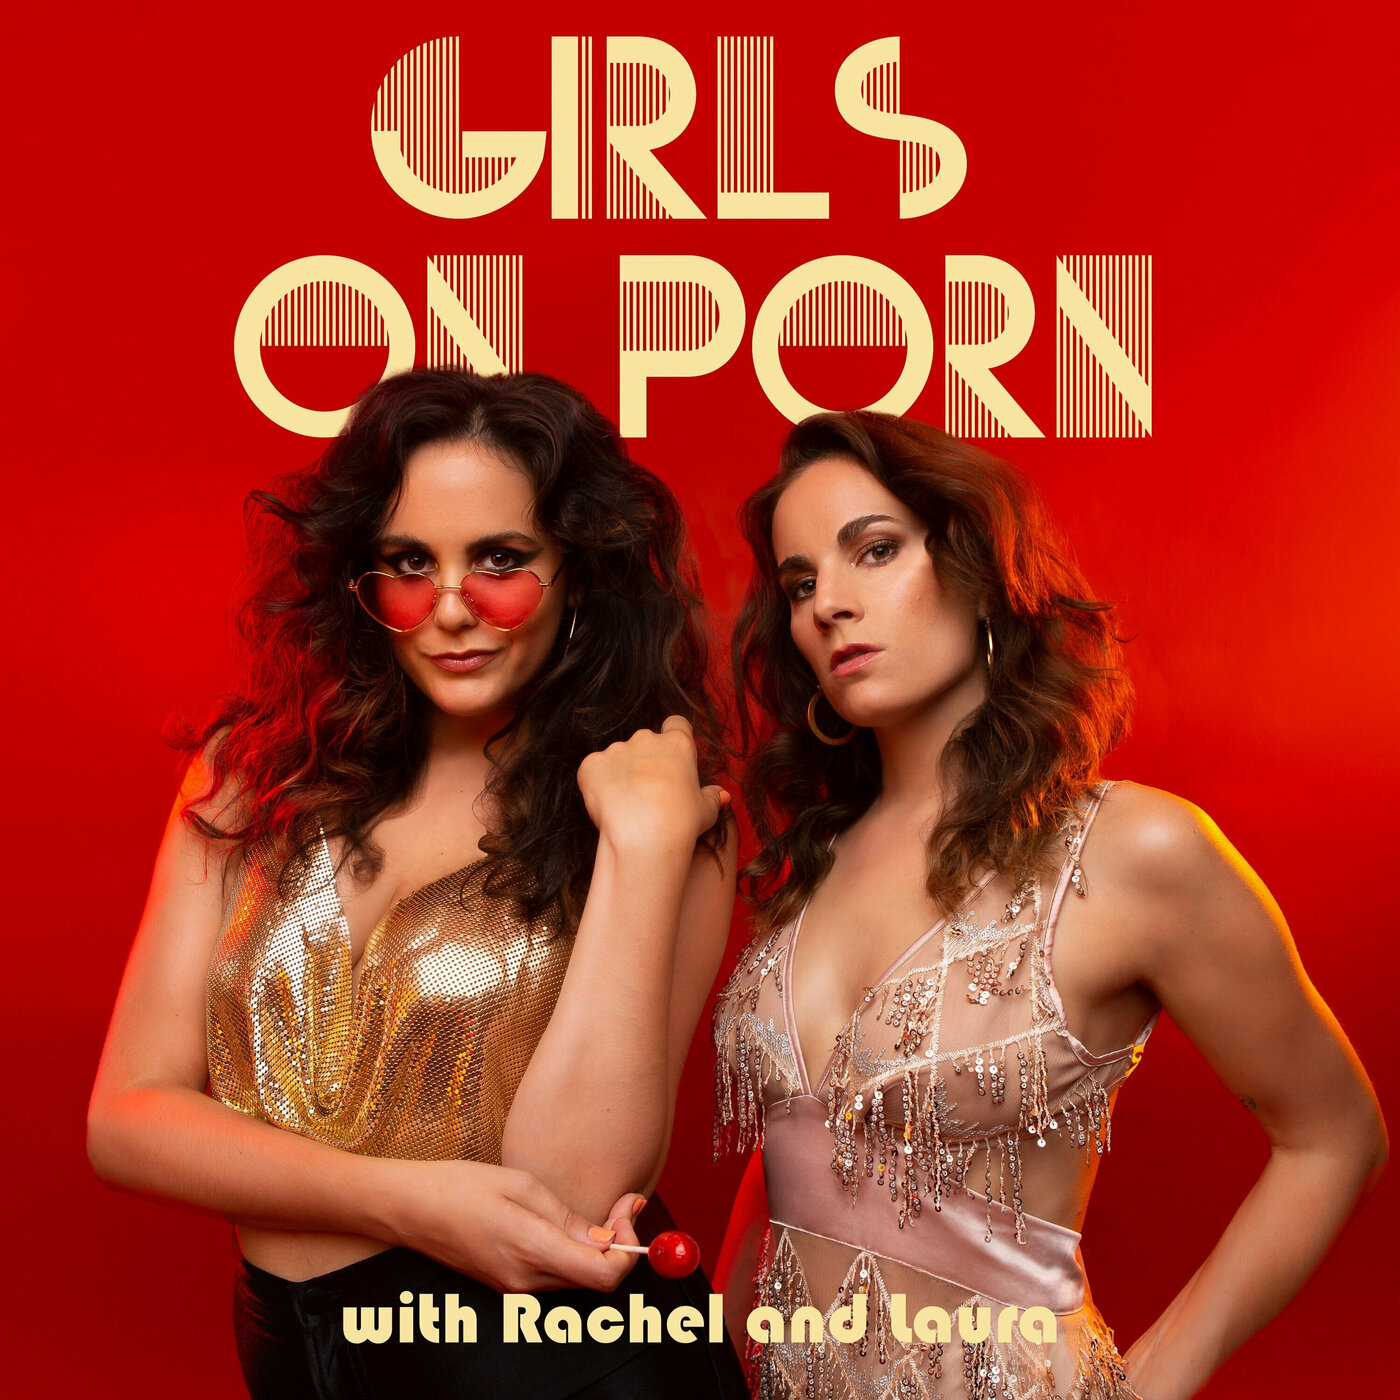 Rough Sex â€“ Girls on Porn â€“ Podcast â€“ Podtail